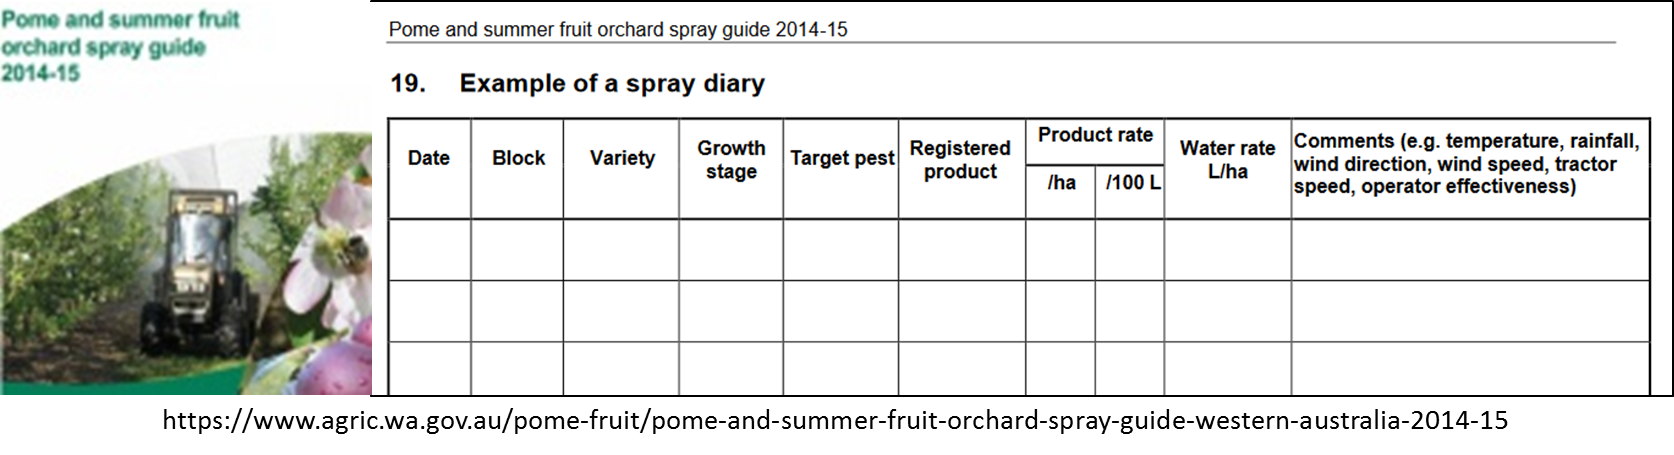 Spray Diary pic 1 Tony Fillippi Intergrity article 3.5.16